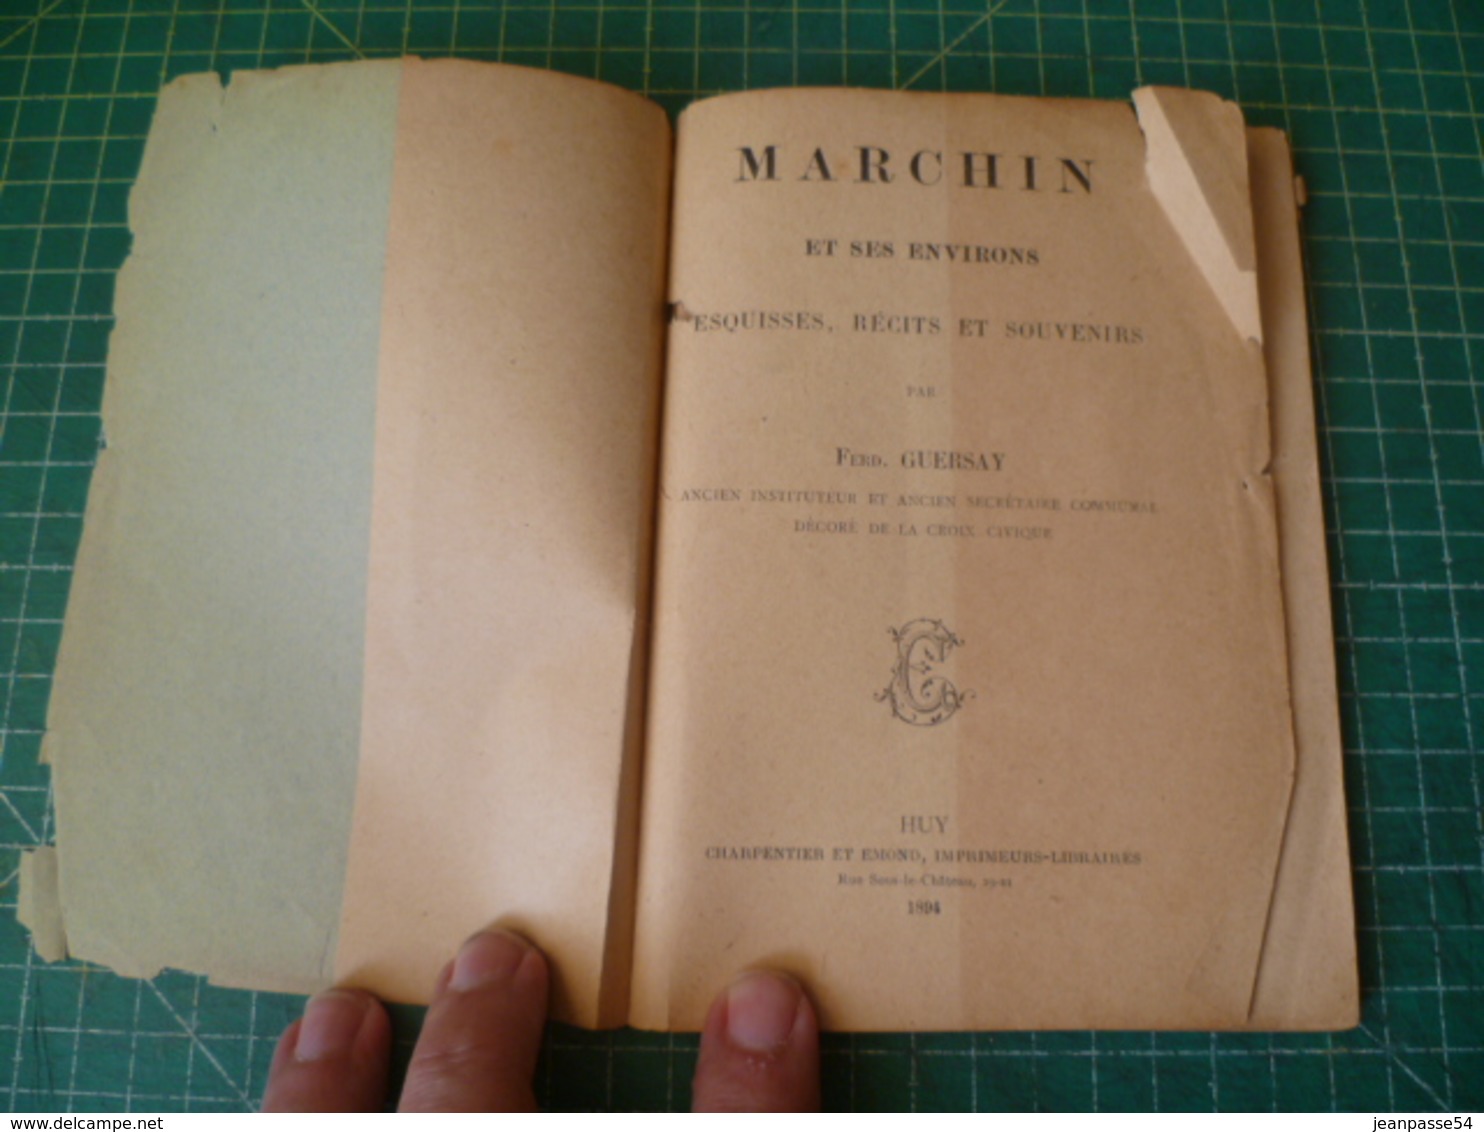 Marchin Et Ses Environs Par F. Guersay. Publié à Huy En 1894 - Belgium